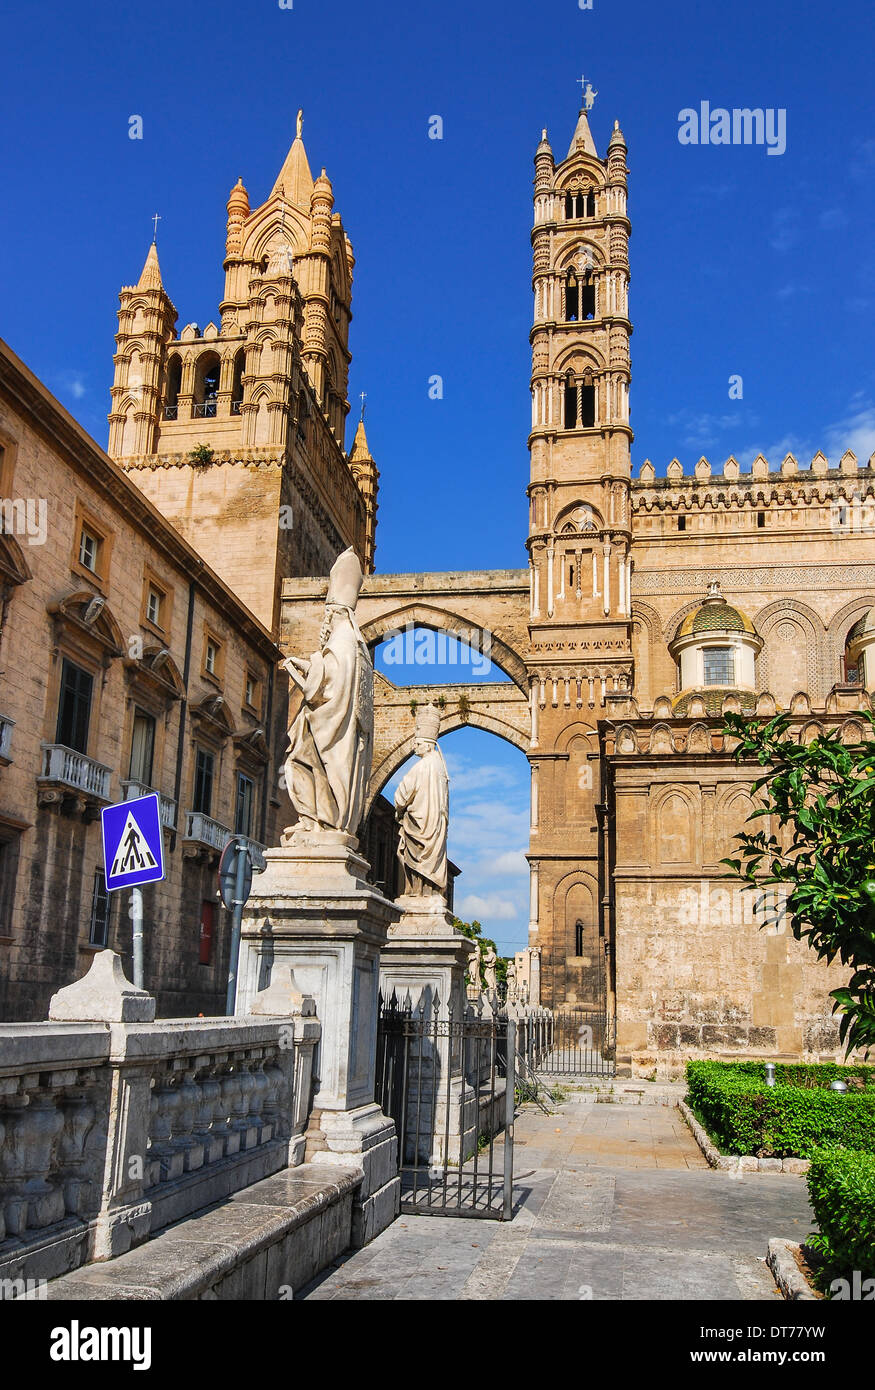 Palermo, Sicilia. La cattedrale è stata costruita in struttura normanna nel 1179. Il campanile medievale in architettura Gotica di stile. Foto Stock